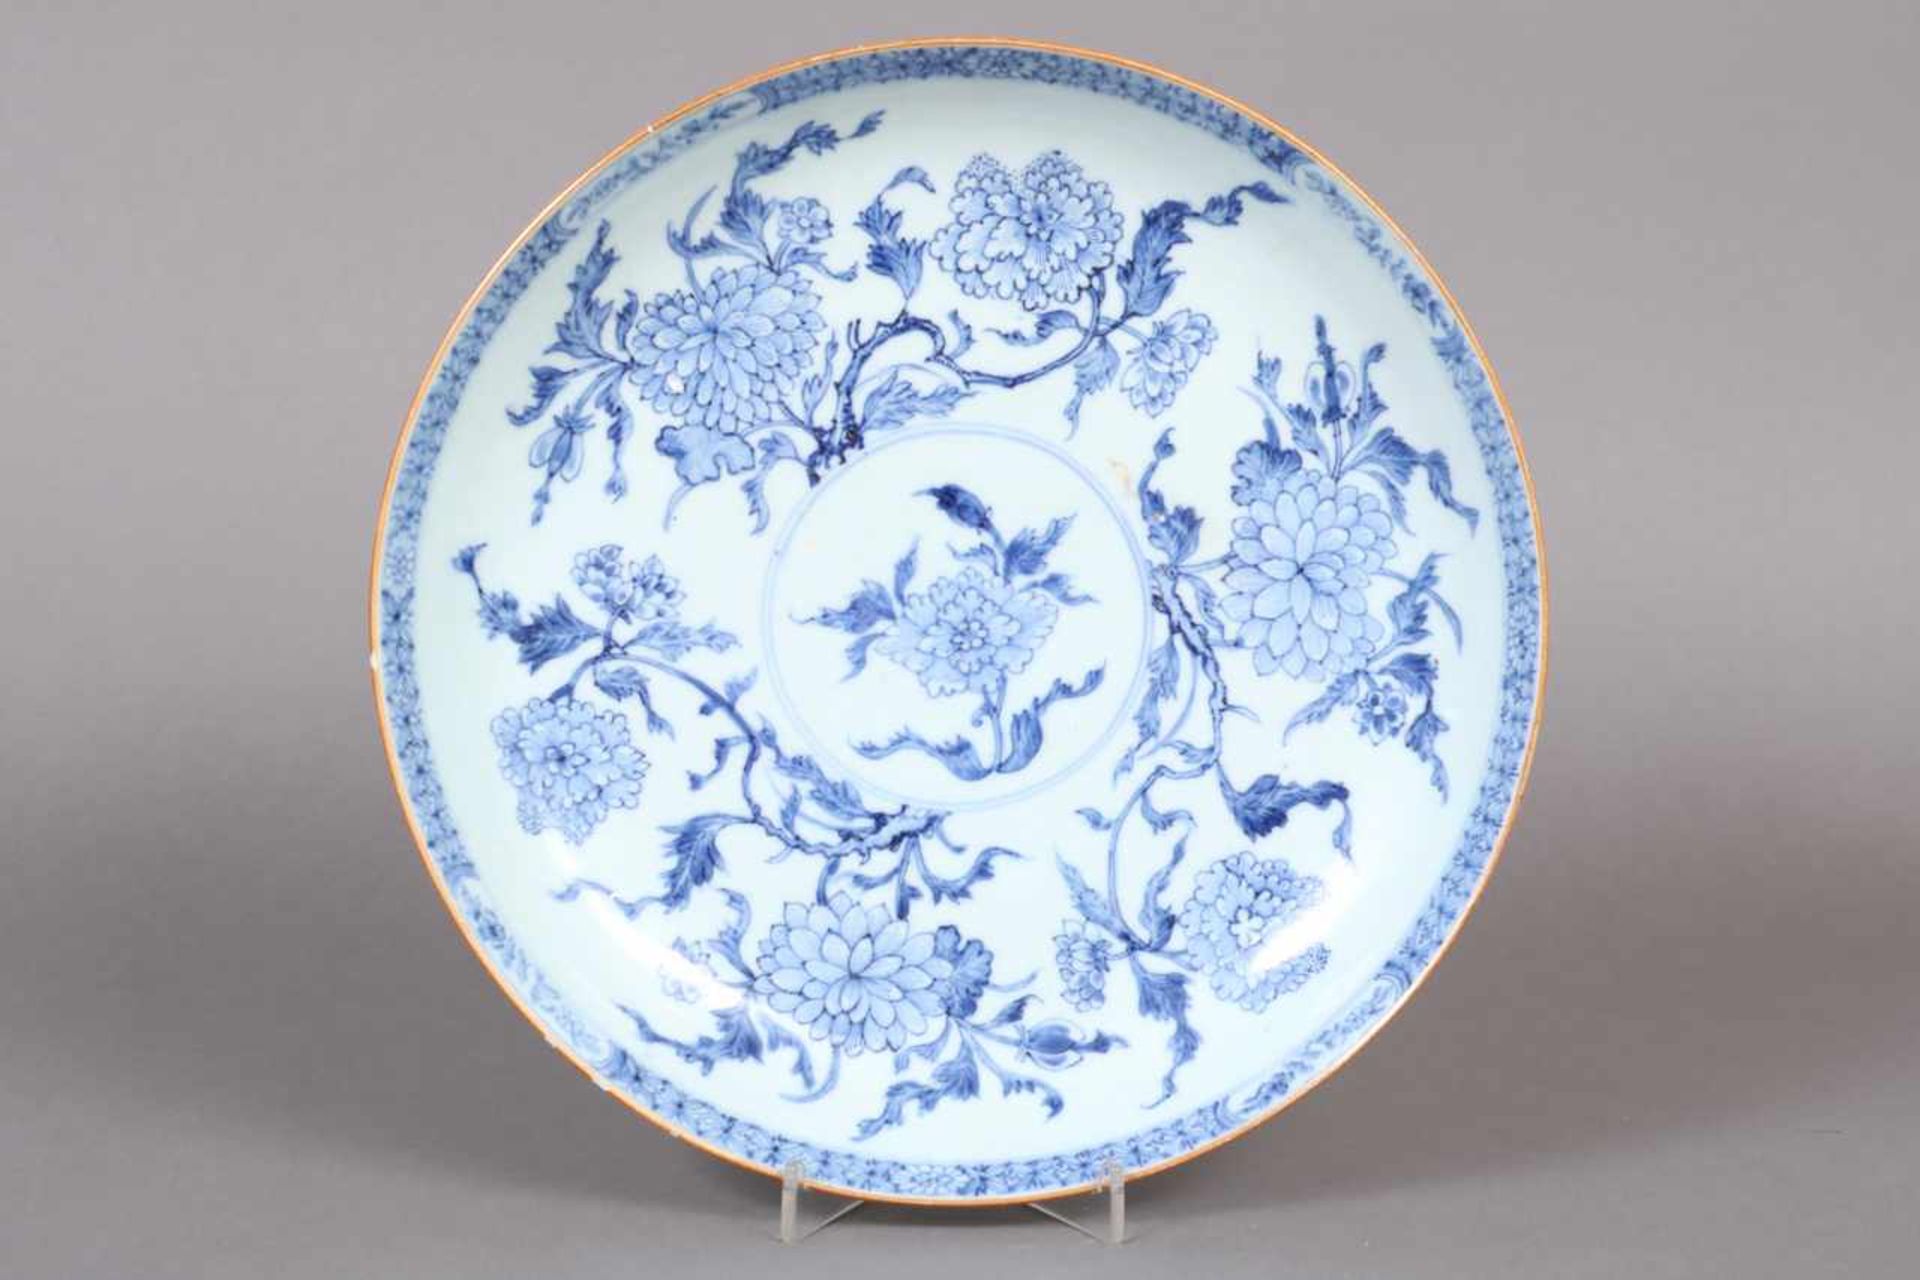 Chinesische Porzellanschale Blaumalerei (Blumen), mit ockerfarbenem Rand, D 28cm, am Rand mehrfach